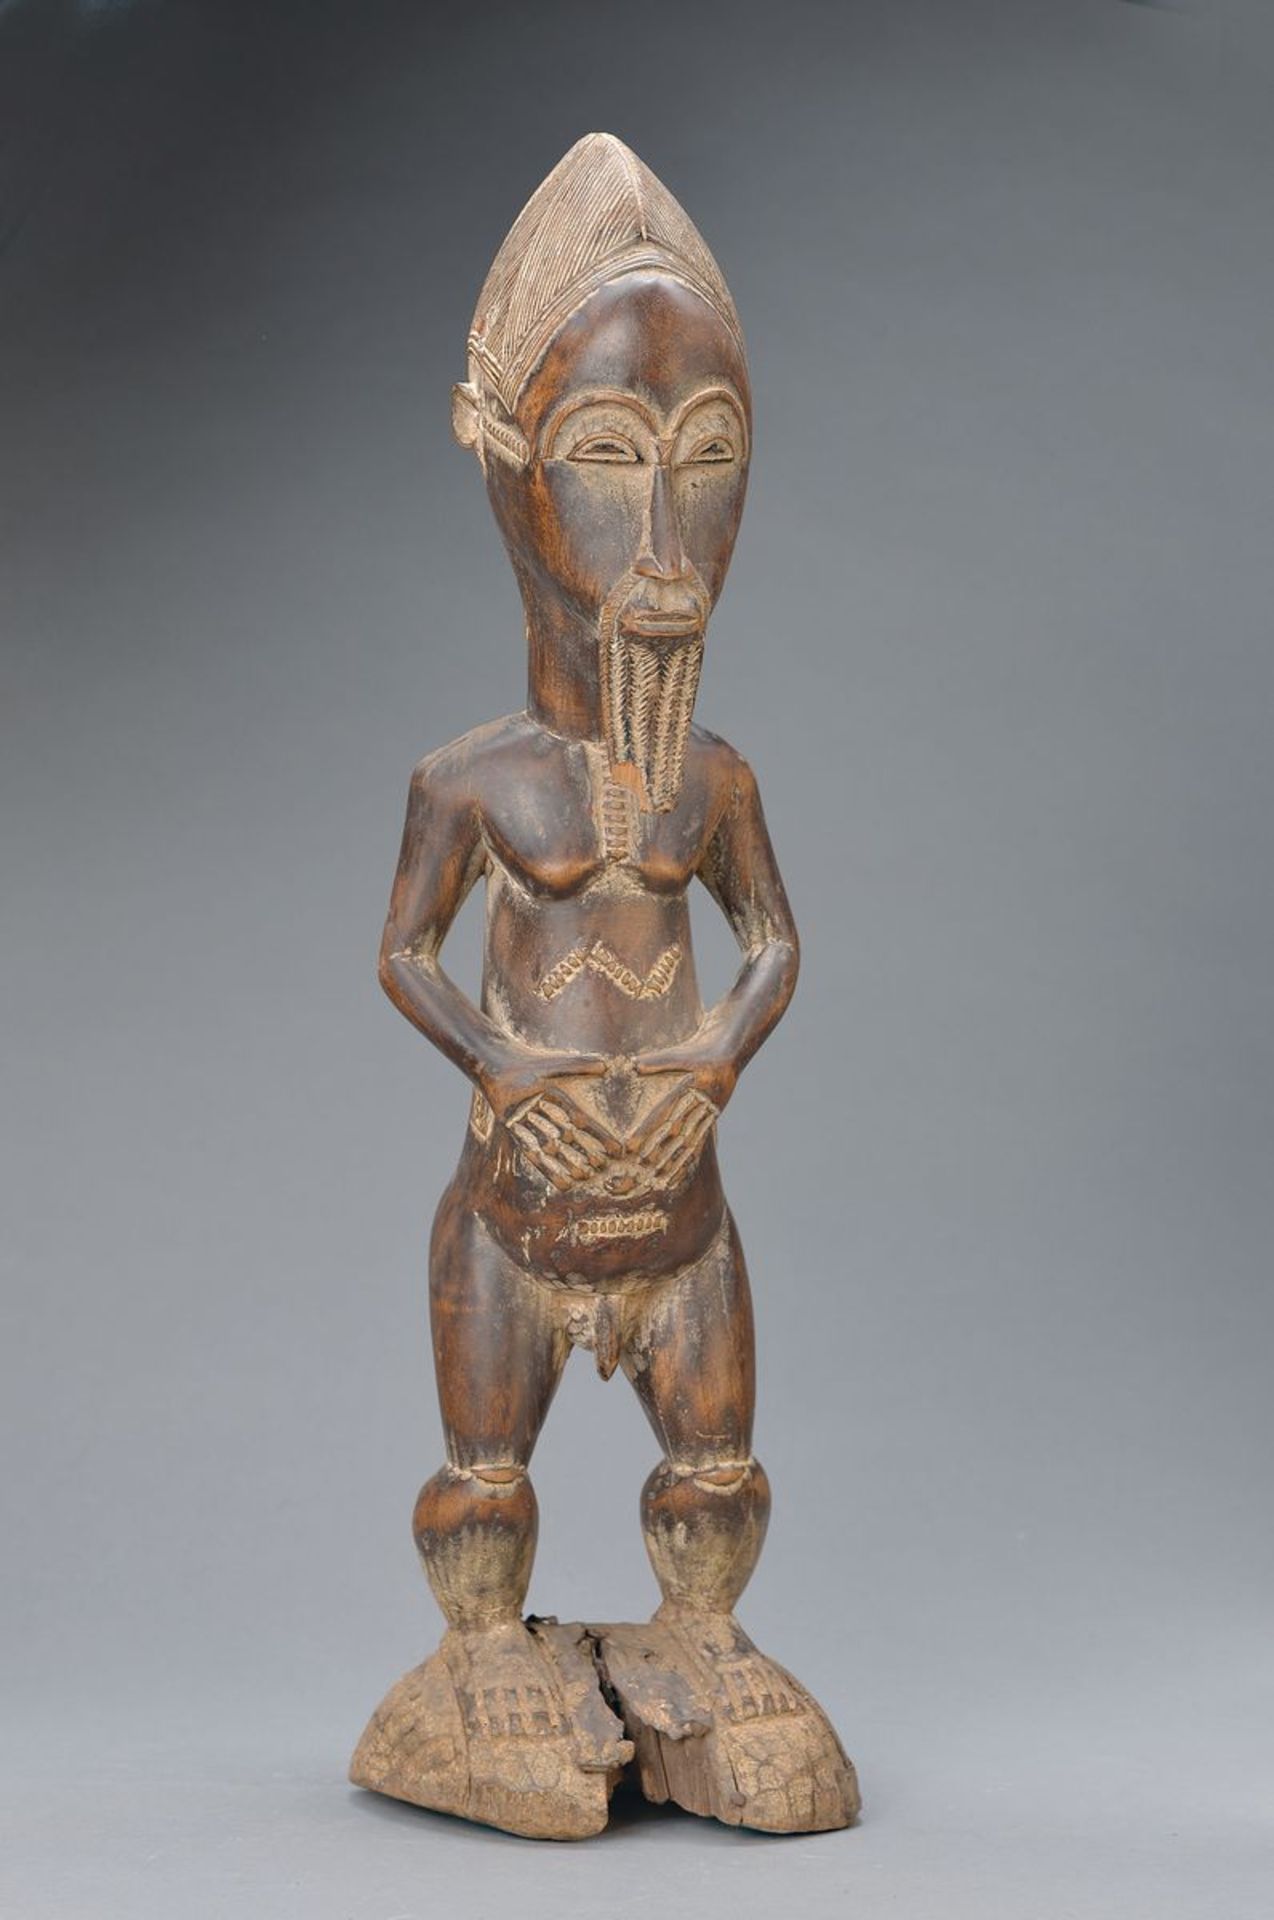 Ahnenfigur, Baule, Elfenbeinküste, ca. 60- 70 Jahre alt, Holz aus einem Stück geschnitzt, bärtiger